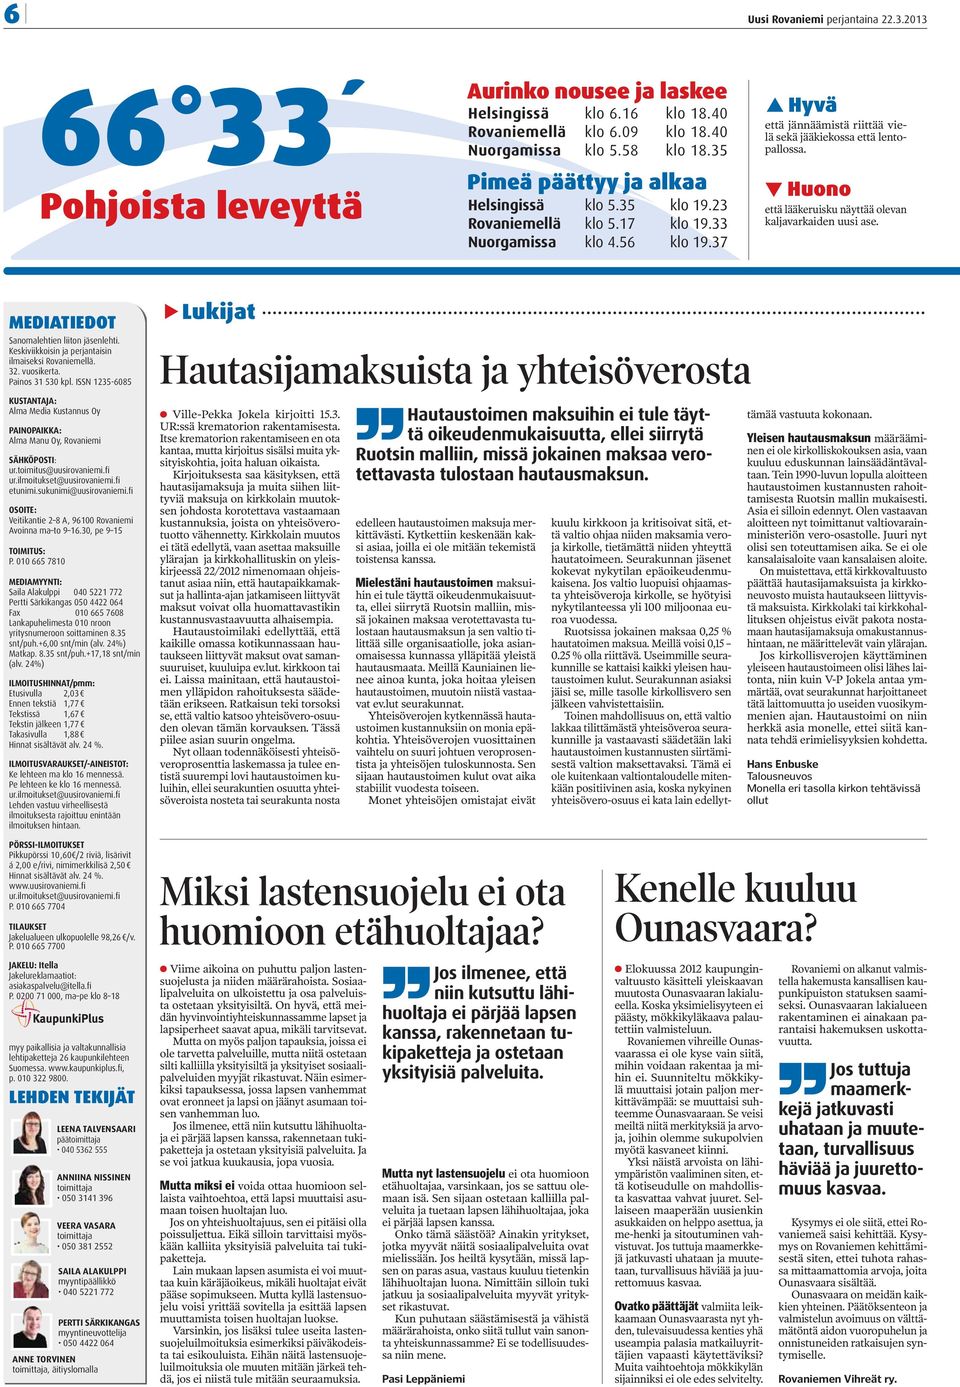 Huono että lääkeruisku näyttää olevan kaljavarkaiden uusi ase. MEDIATIEDOT Sanomalehtien liiton jäsenlehti. Keskiviikkoisin ja perjantaisin ilmaiseksi Rovaniemellä. 32. vuosikerta. Painos 31 530 kpl.